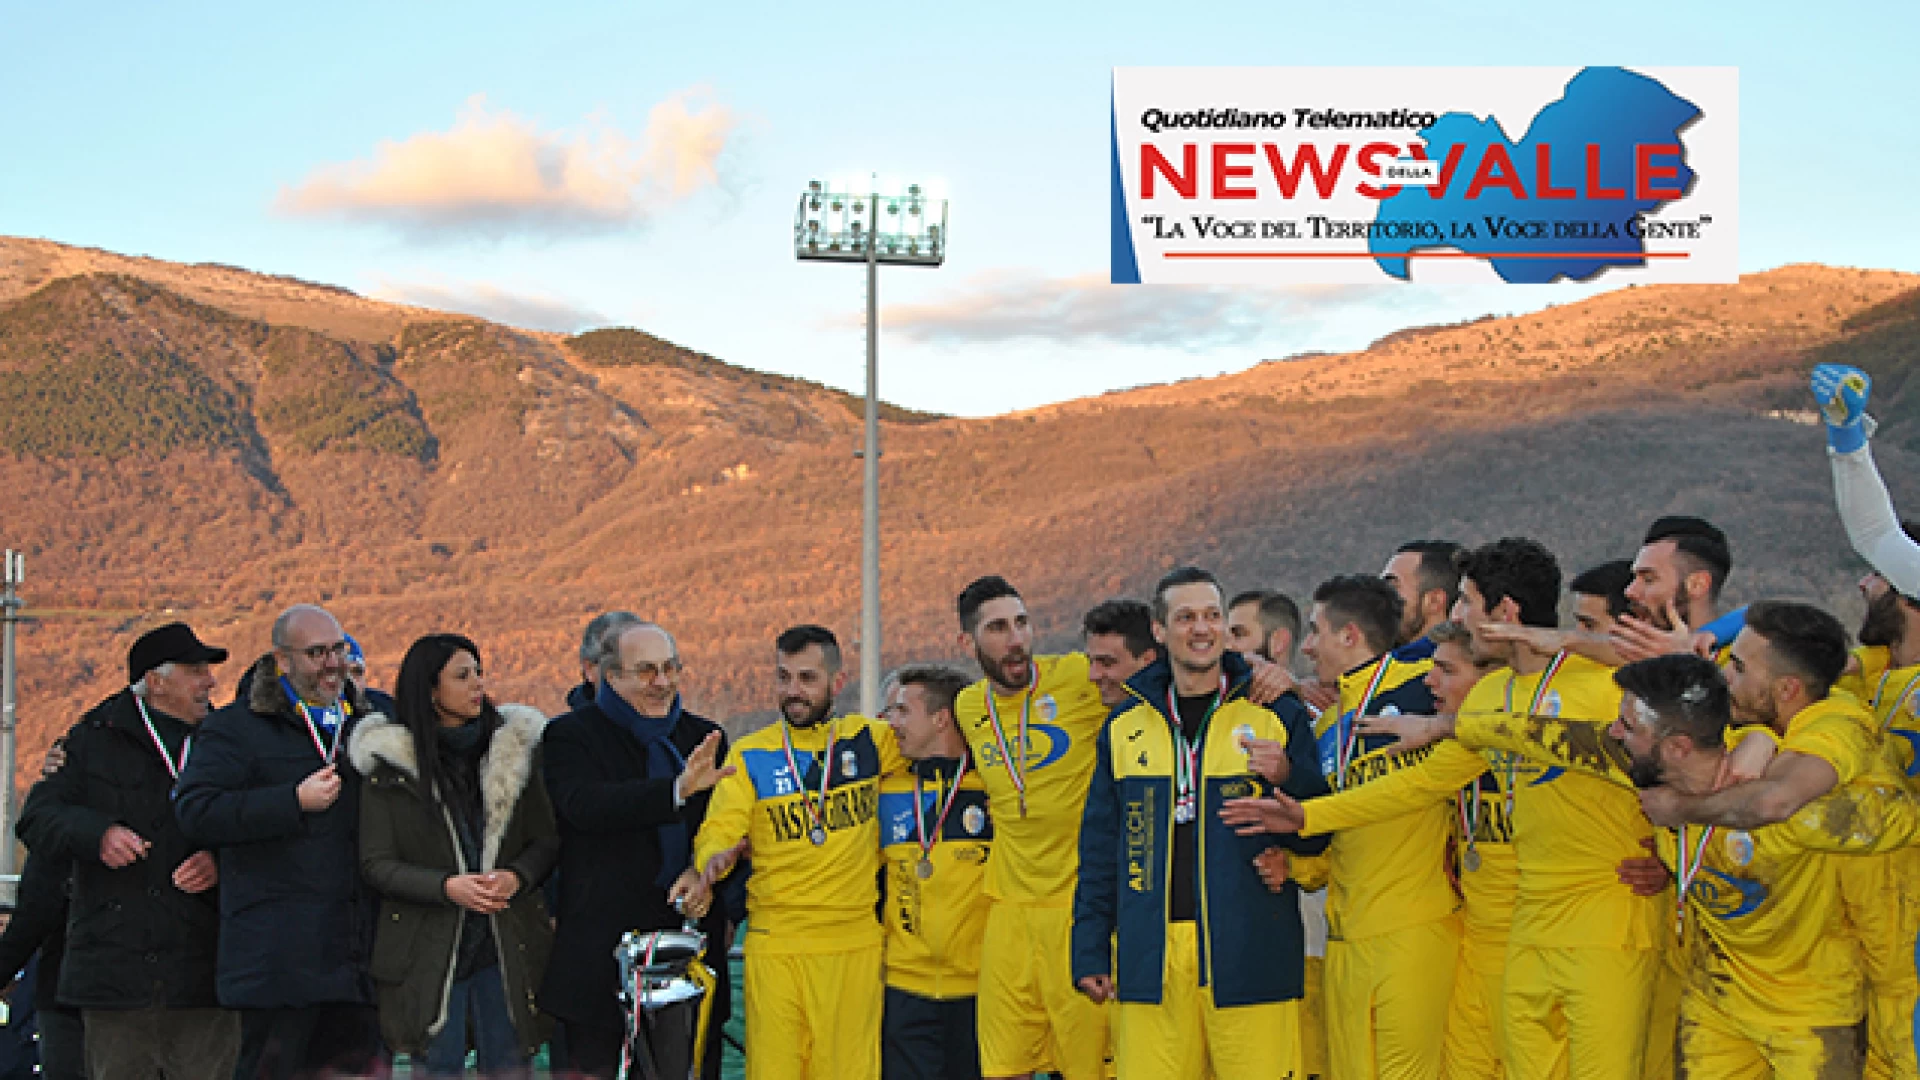 La finale della Coppa Italia regionale negli scatti a cura della nostra redazione!!!! L'inedita photogallery del nostro quotidiano